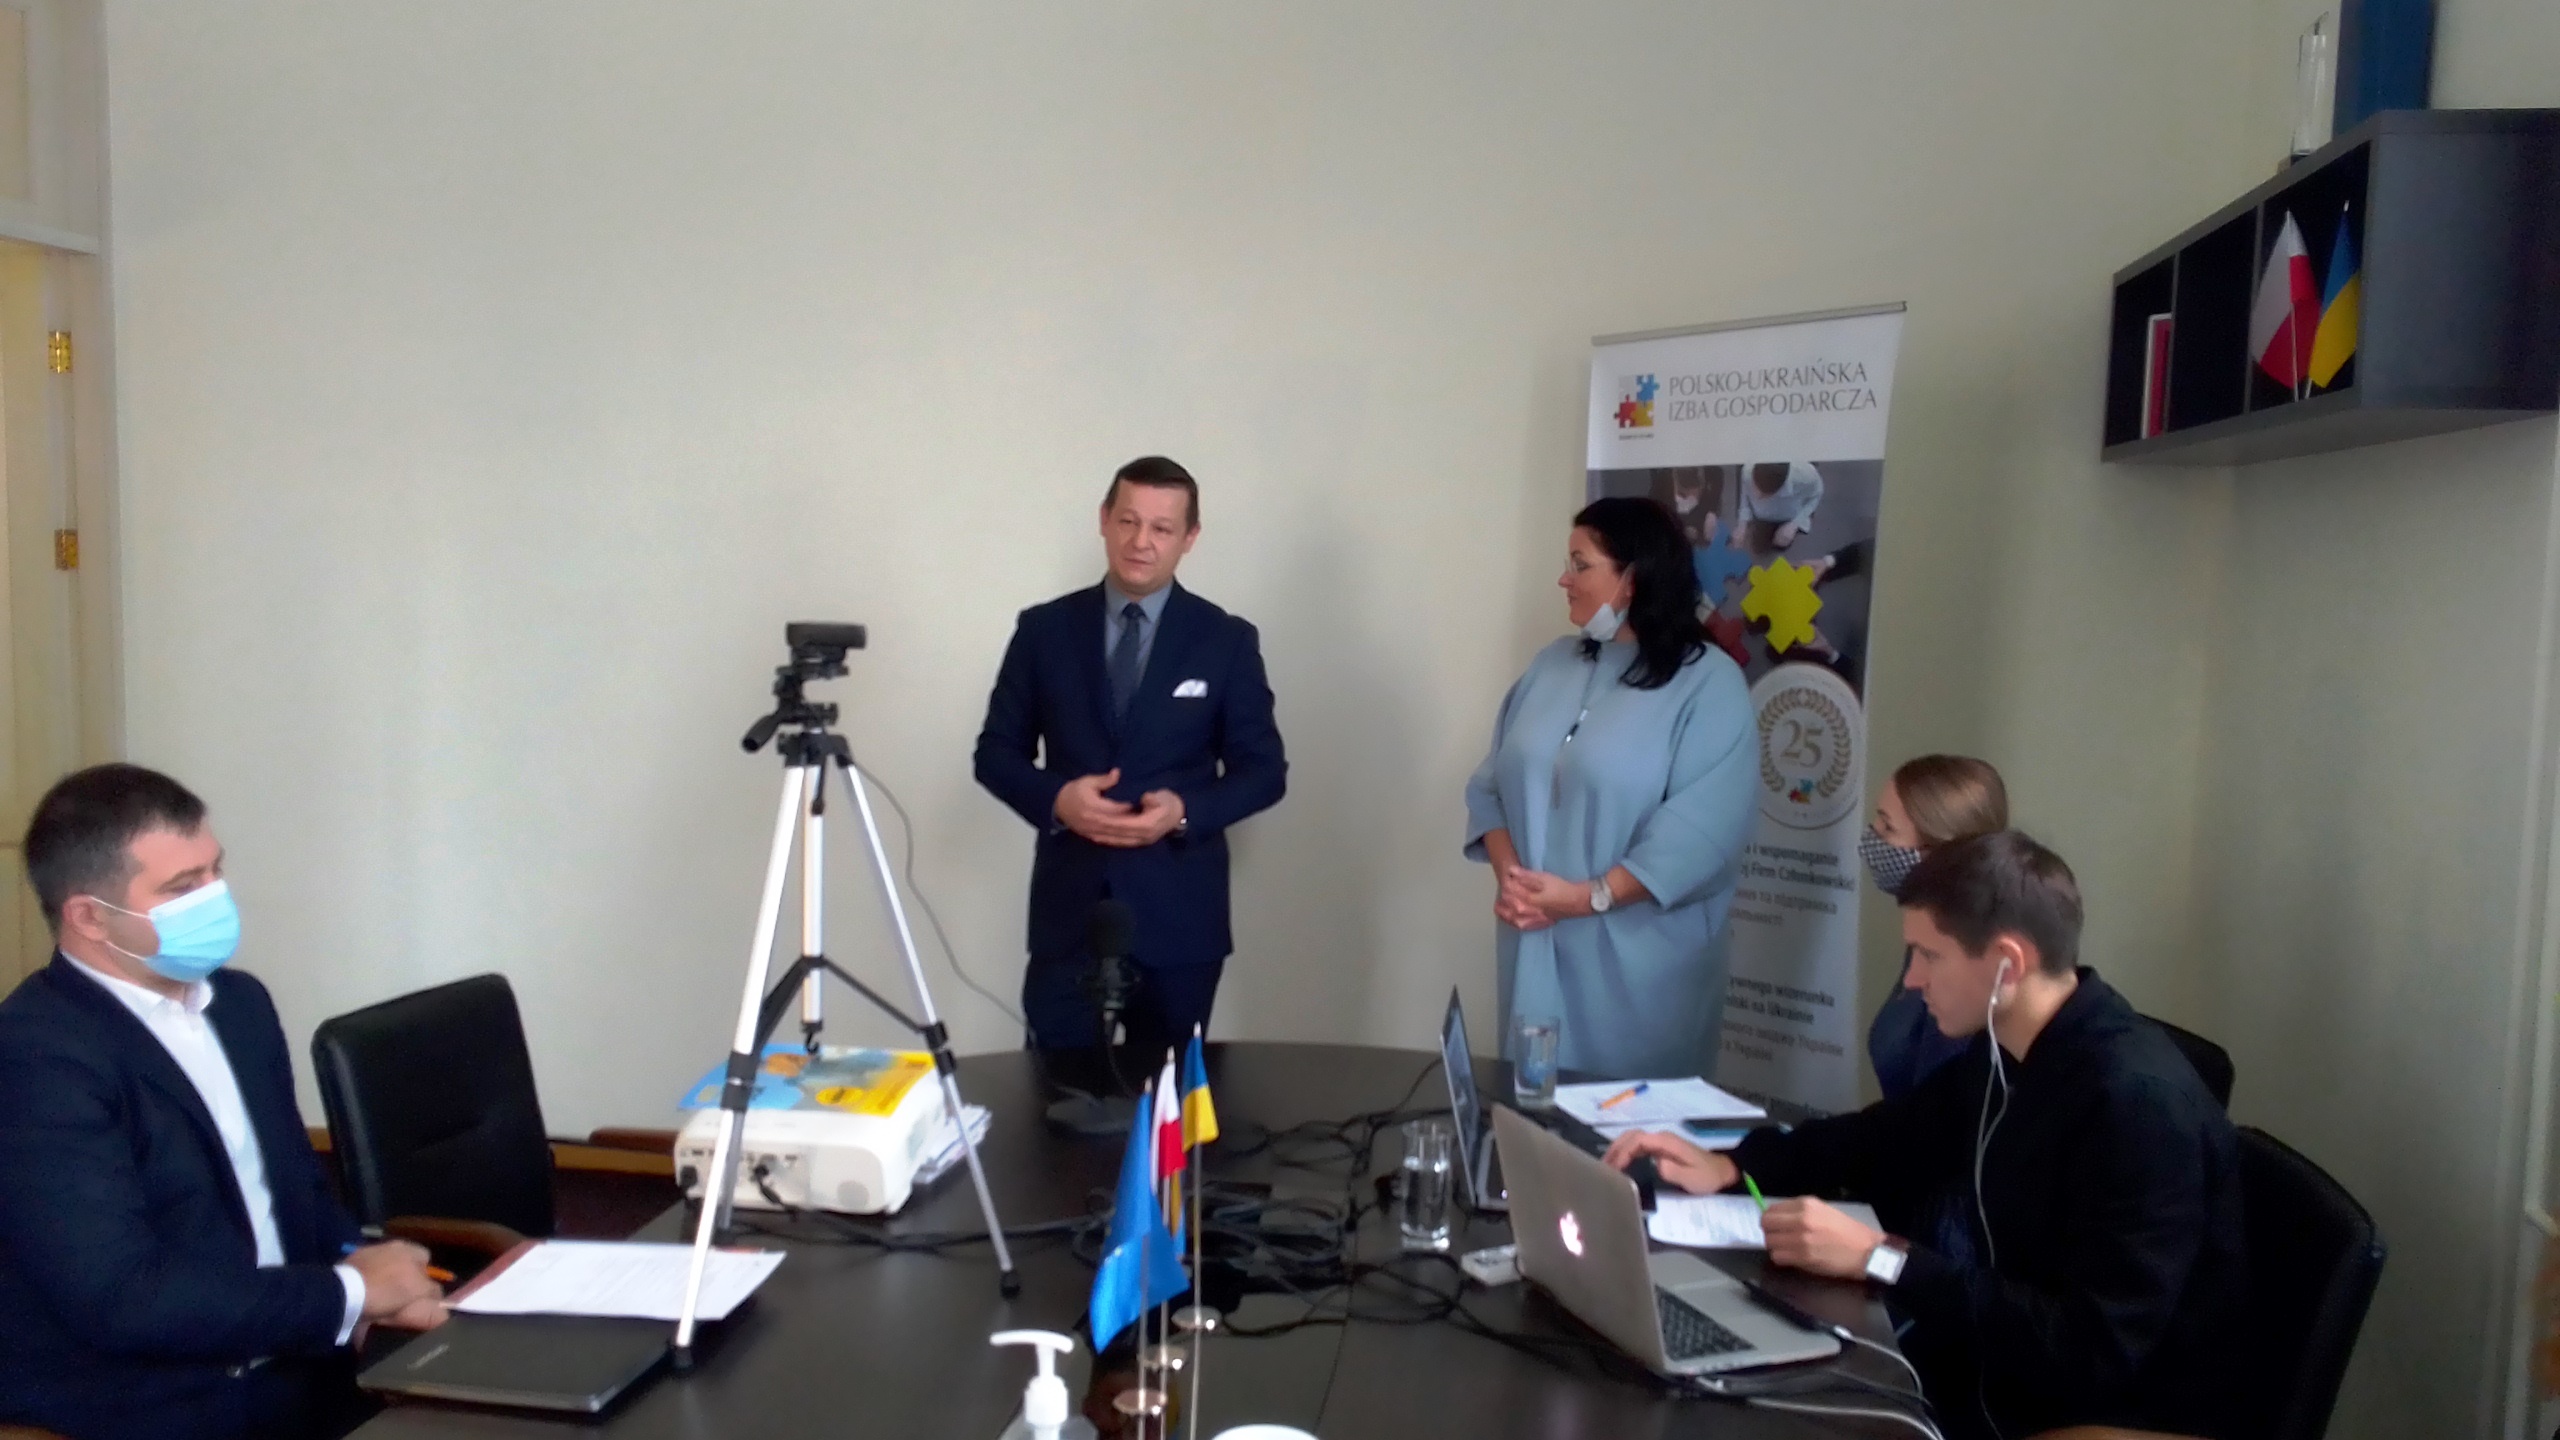 Польські інструменти підтримки будівництва в Україні, відповідний досвід Польщі та можливості його використання в Україні